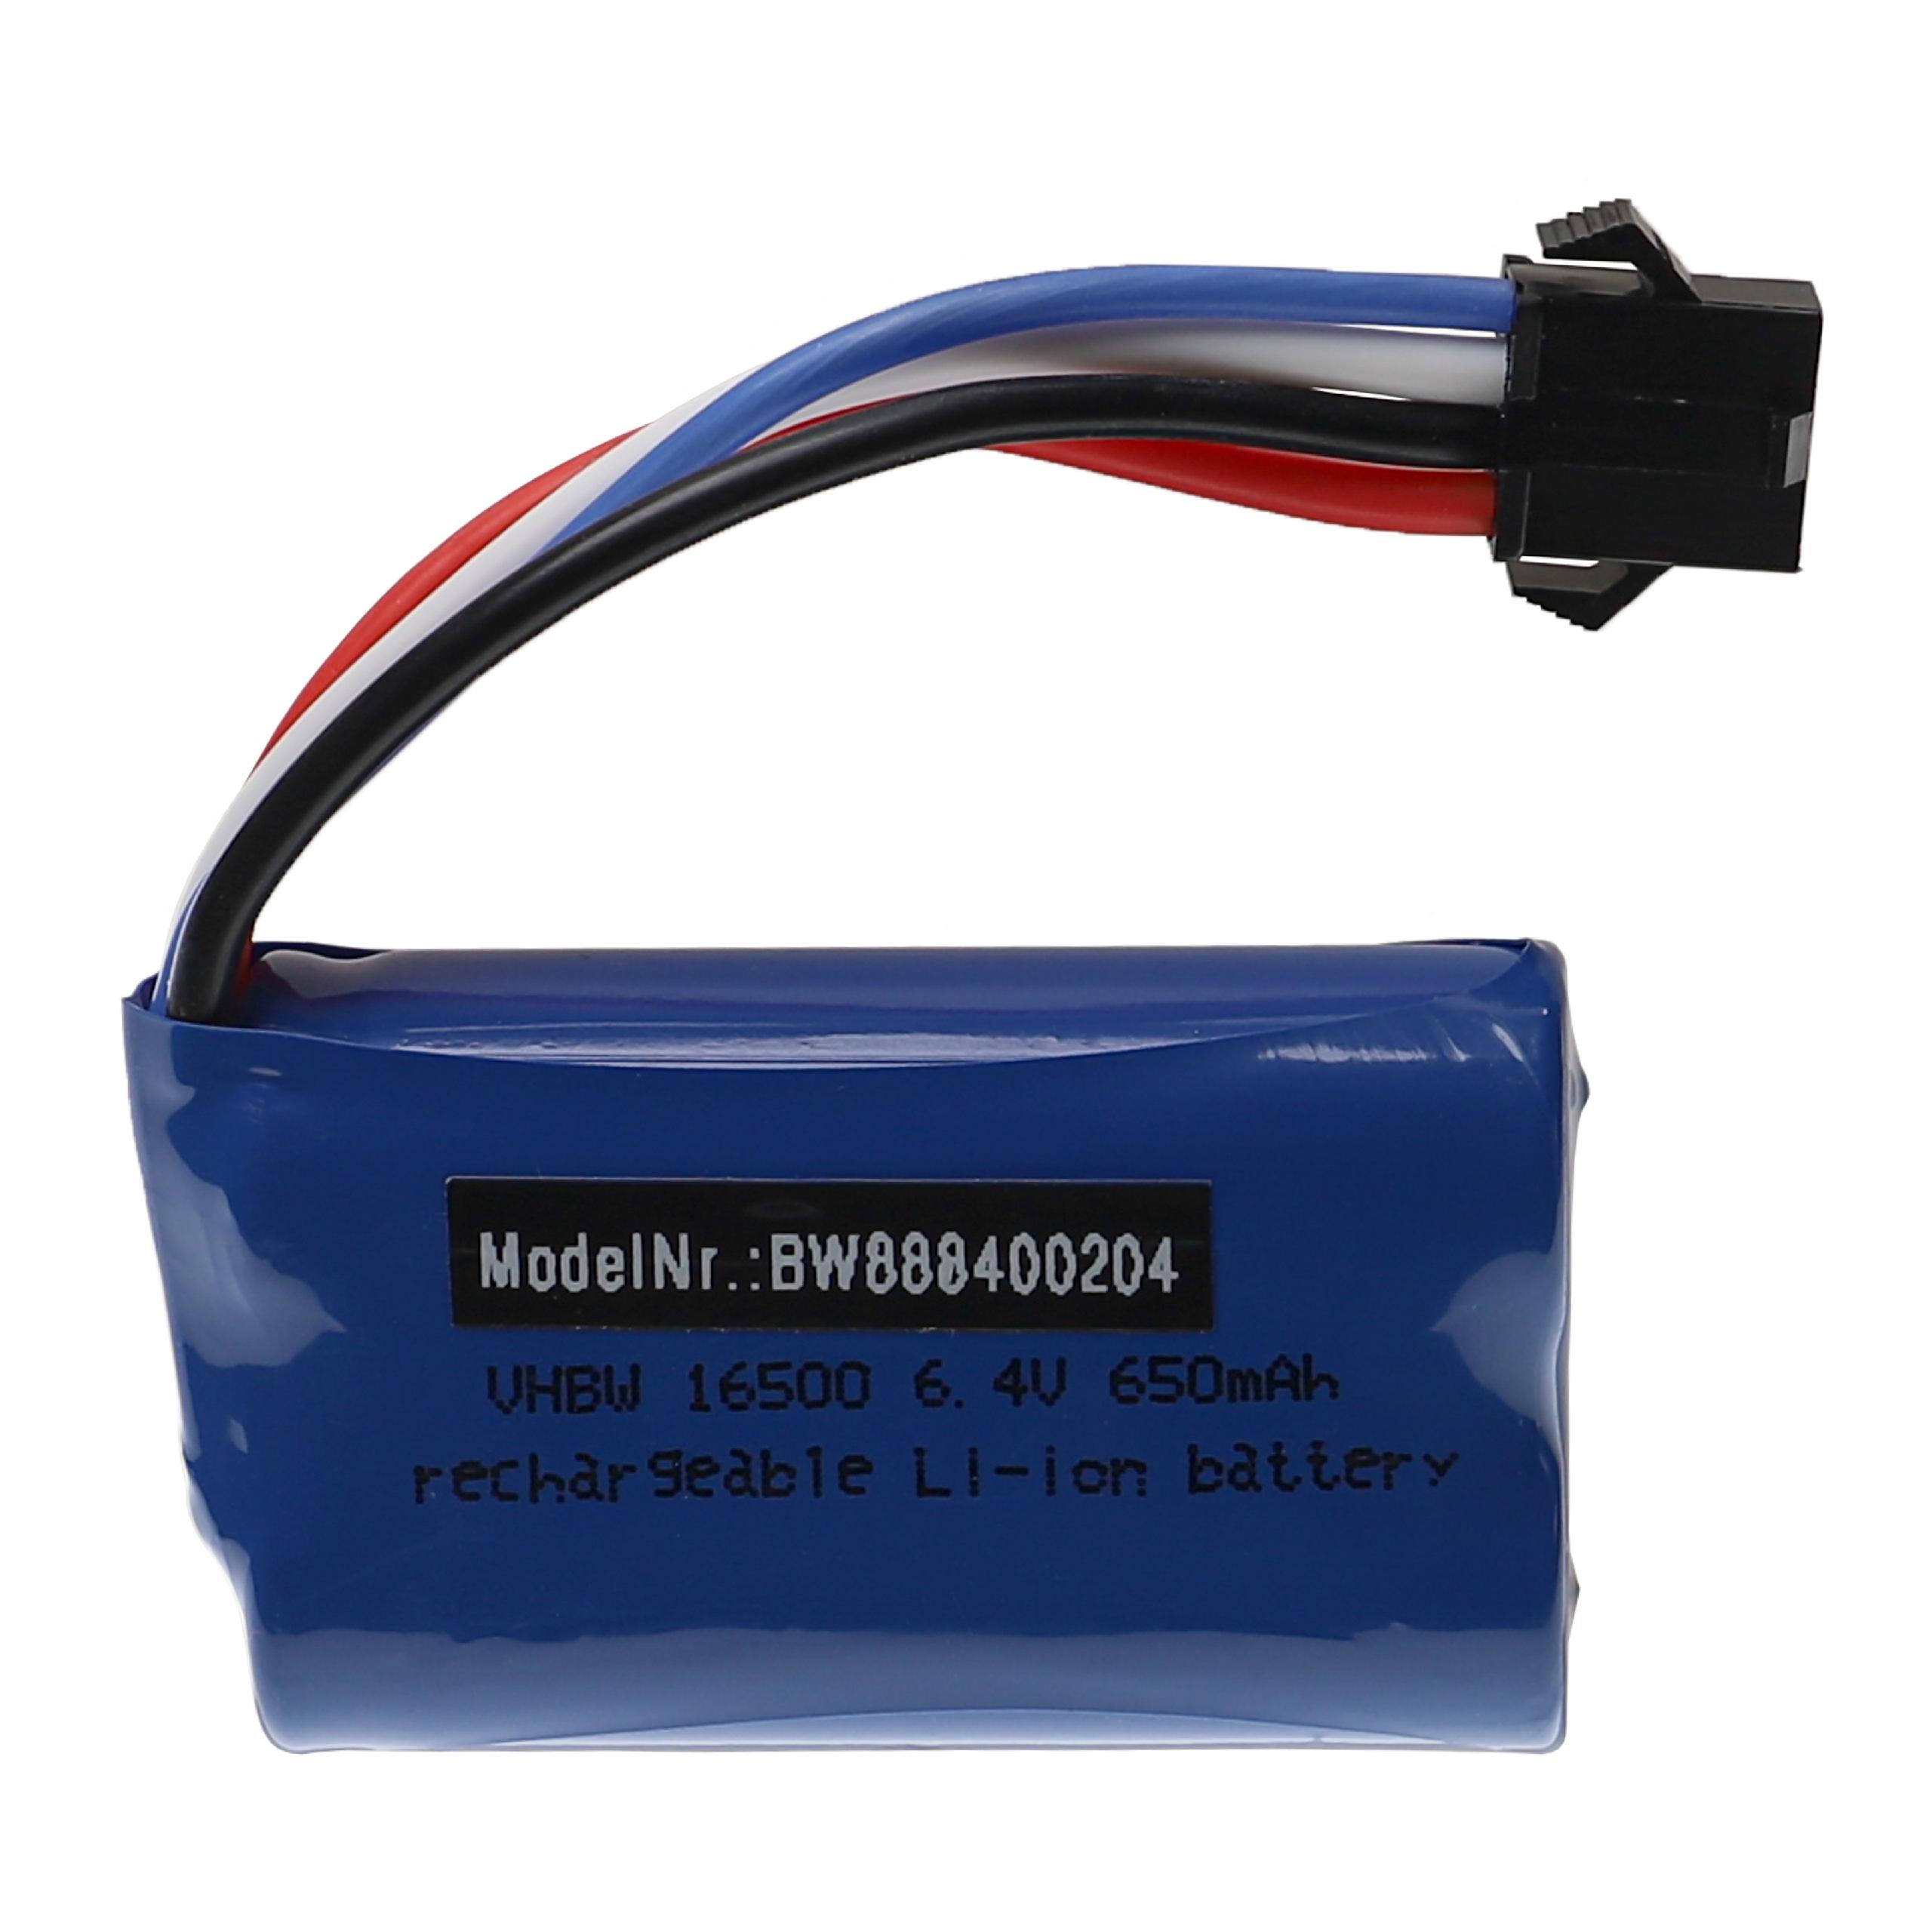 Batería para dispositivos modelismo Wltoys 18628, 18629 - 650 mAh 6,4 V Li-Ion, SM-4P